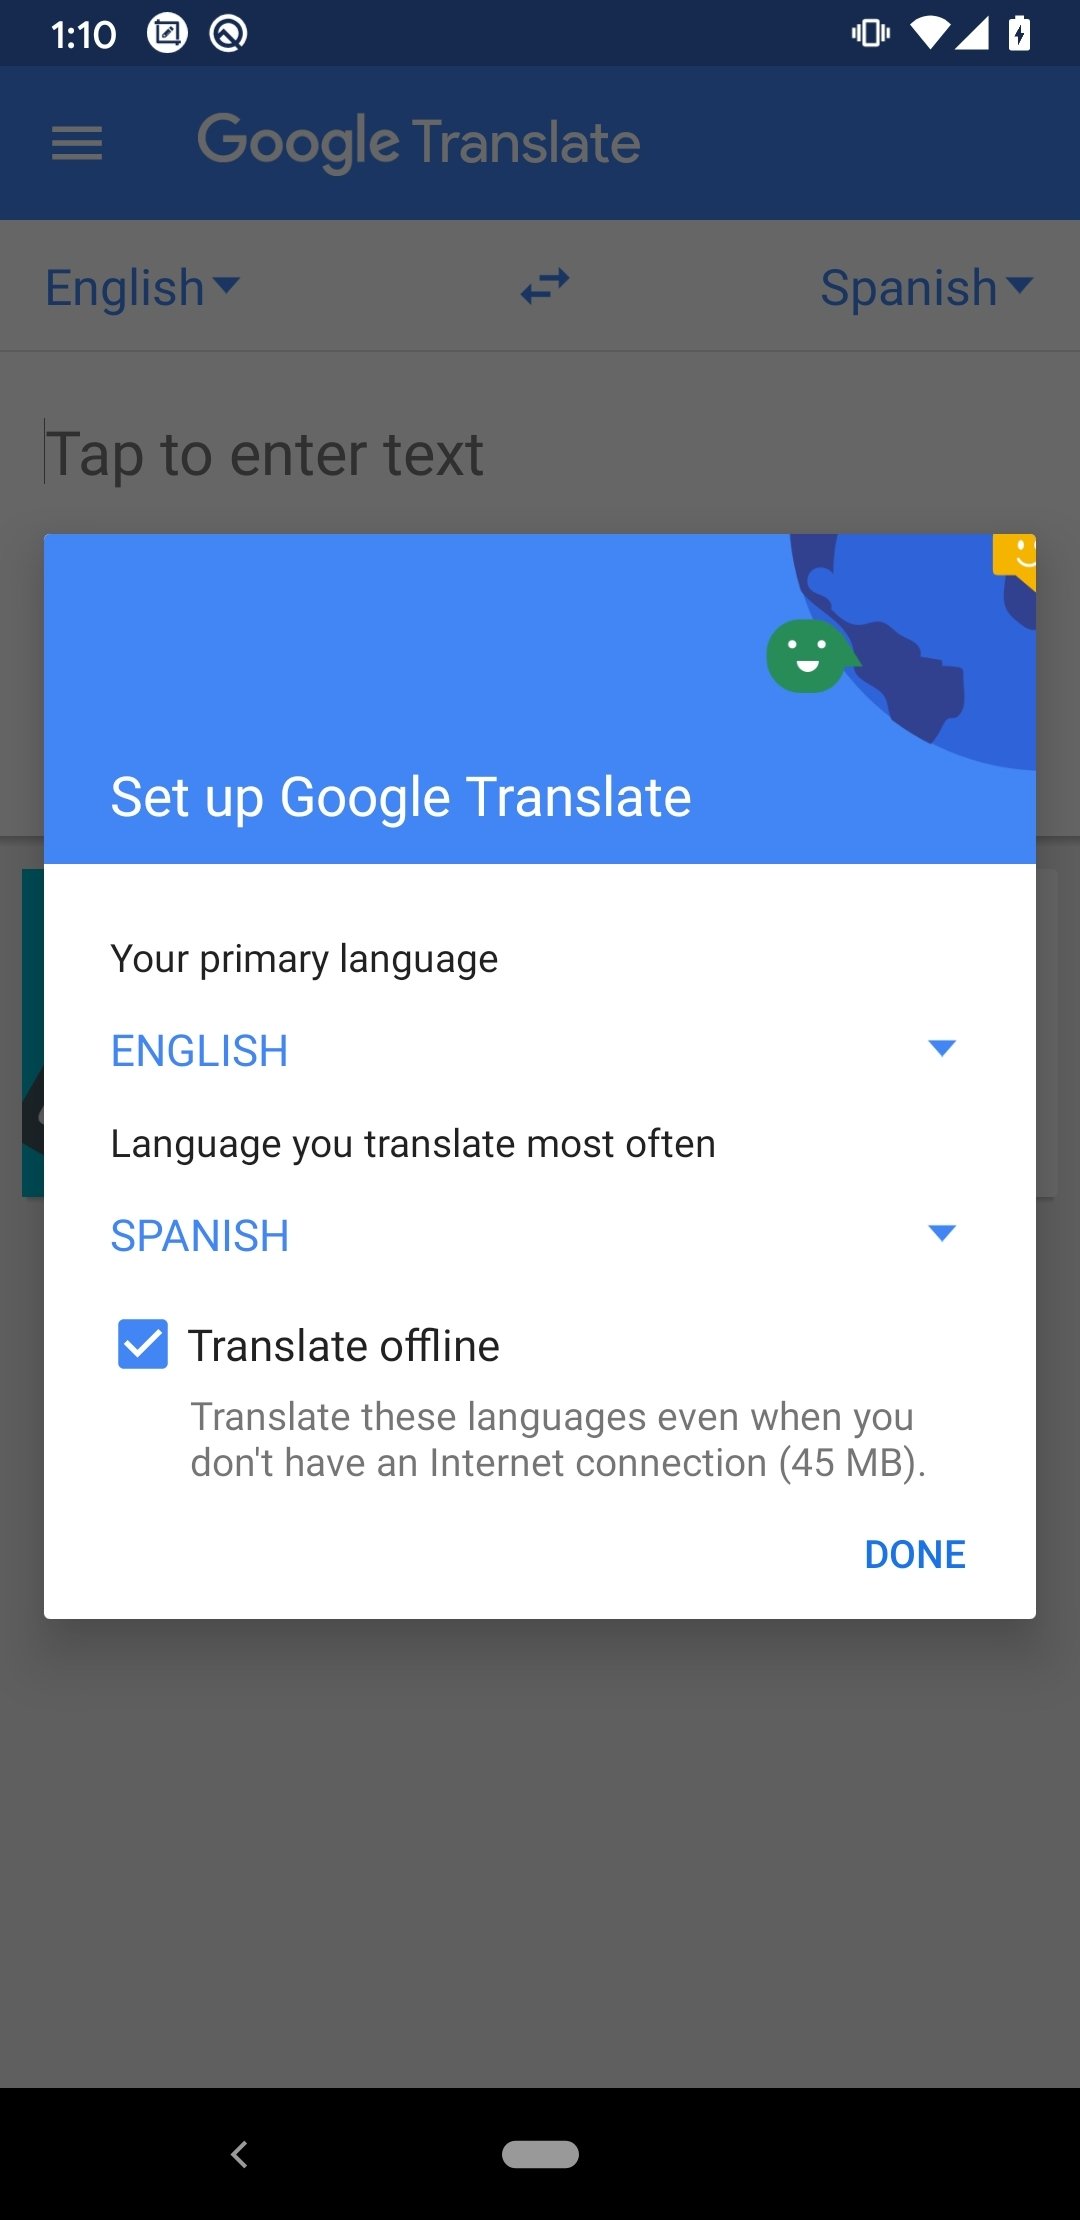 google translate 6 17 1 04 359877260